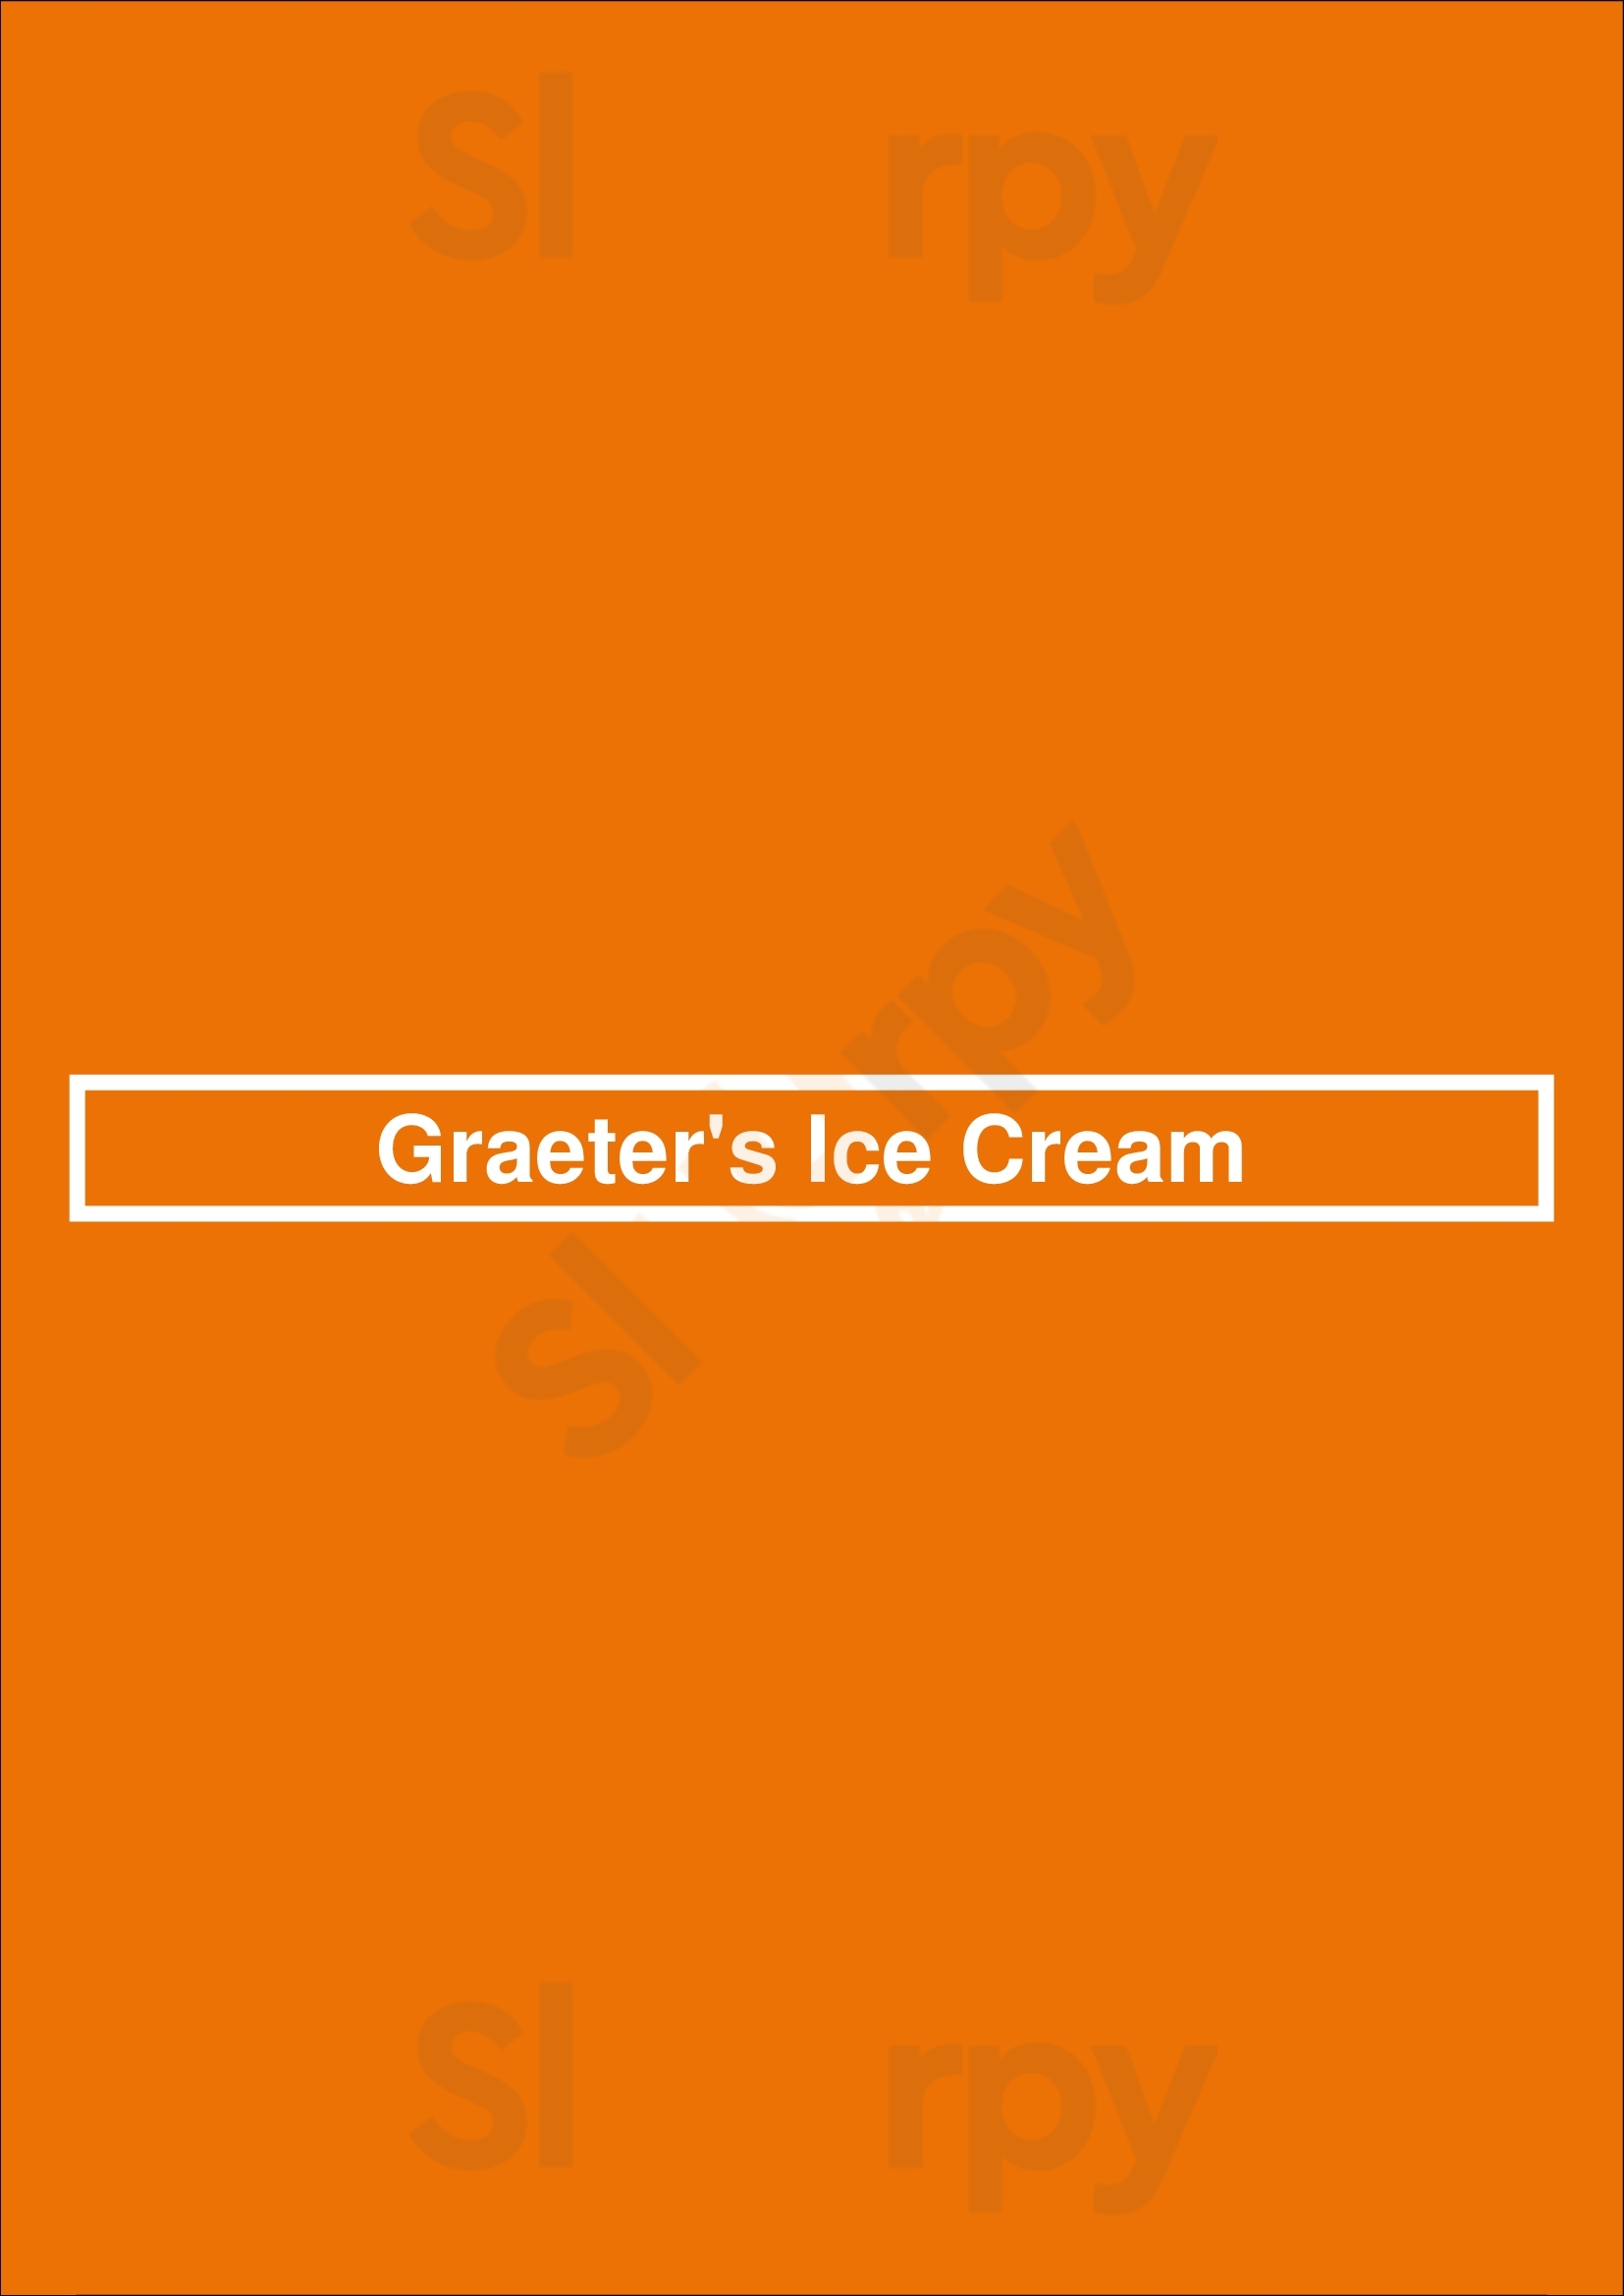 Graeter's Ice Cream Louisville Menu - 1